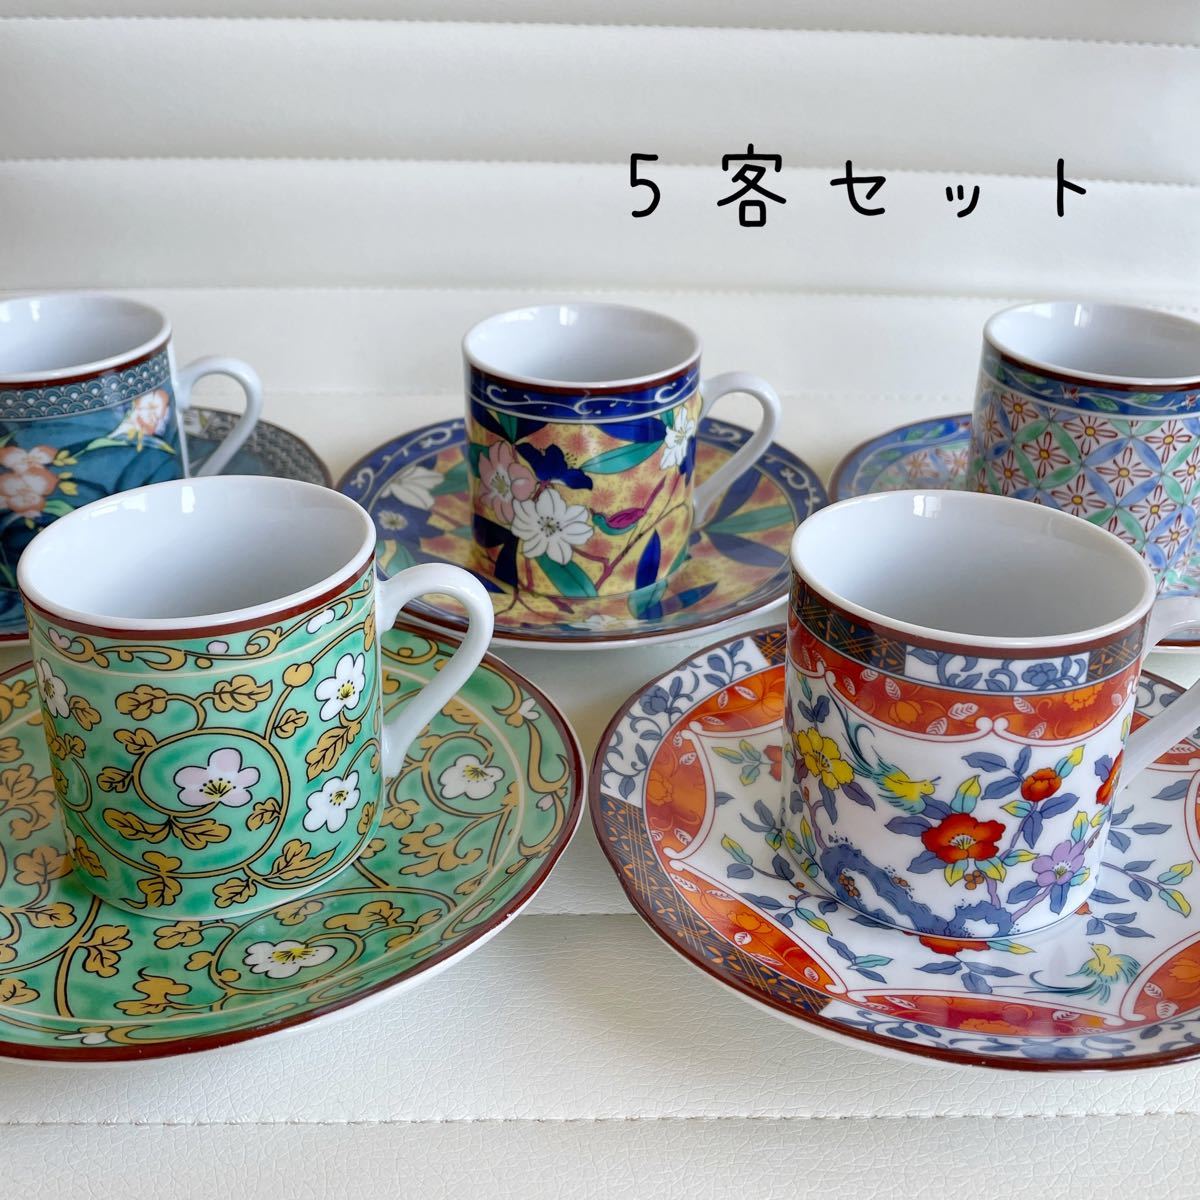 専門店では 古伊万里 有田焼 コーヒーカップソーサー5個セット